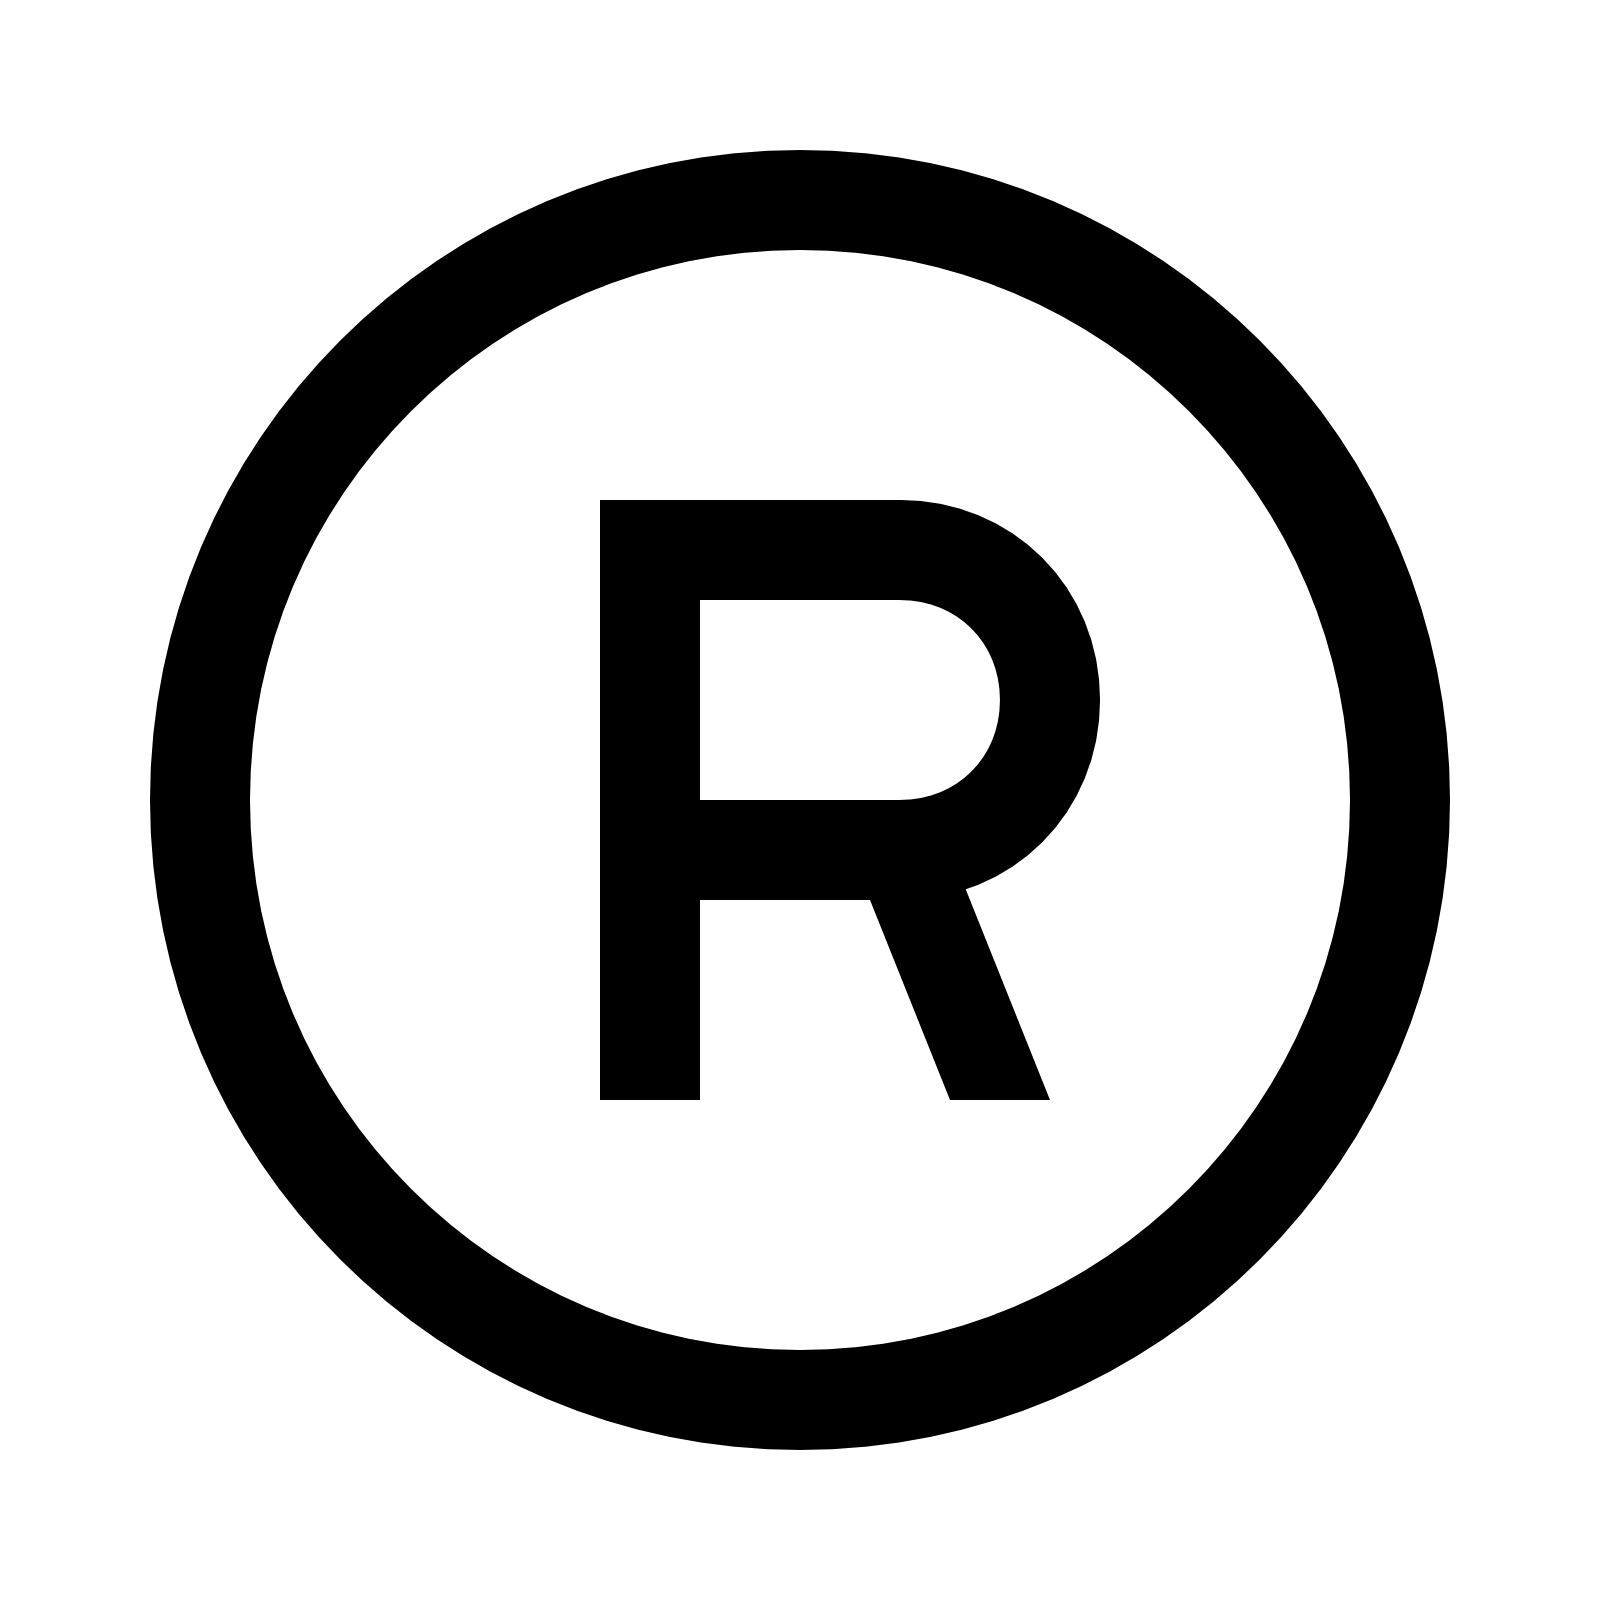 Registered Logo - Copyright R Symbol (Registered Trademark) PNG Transparent Images ...